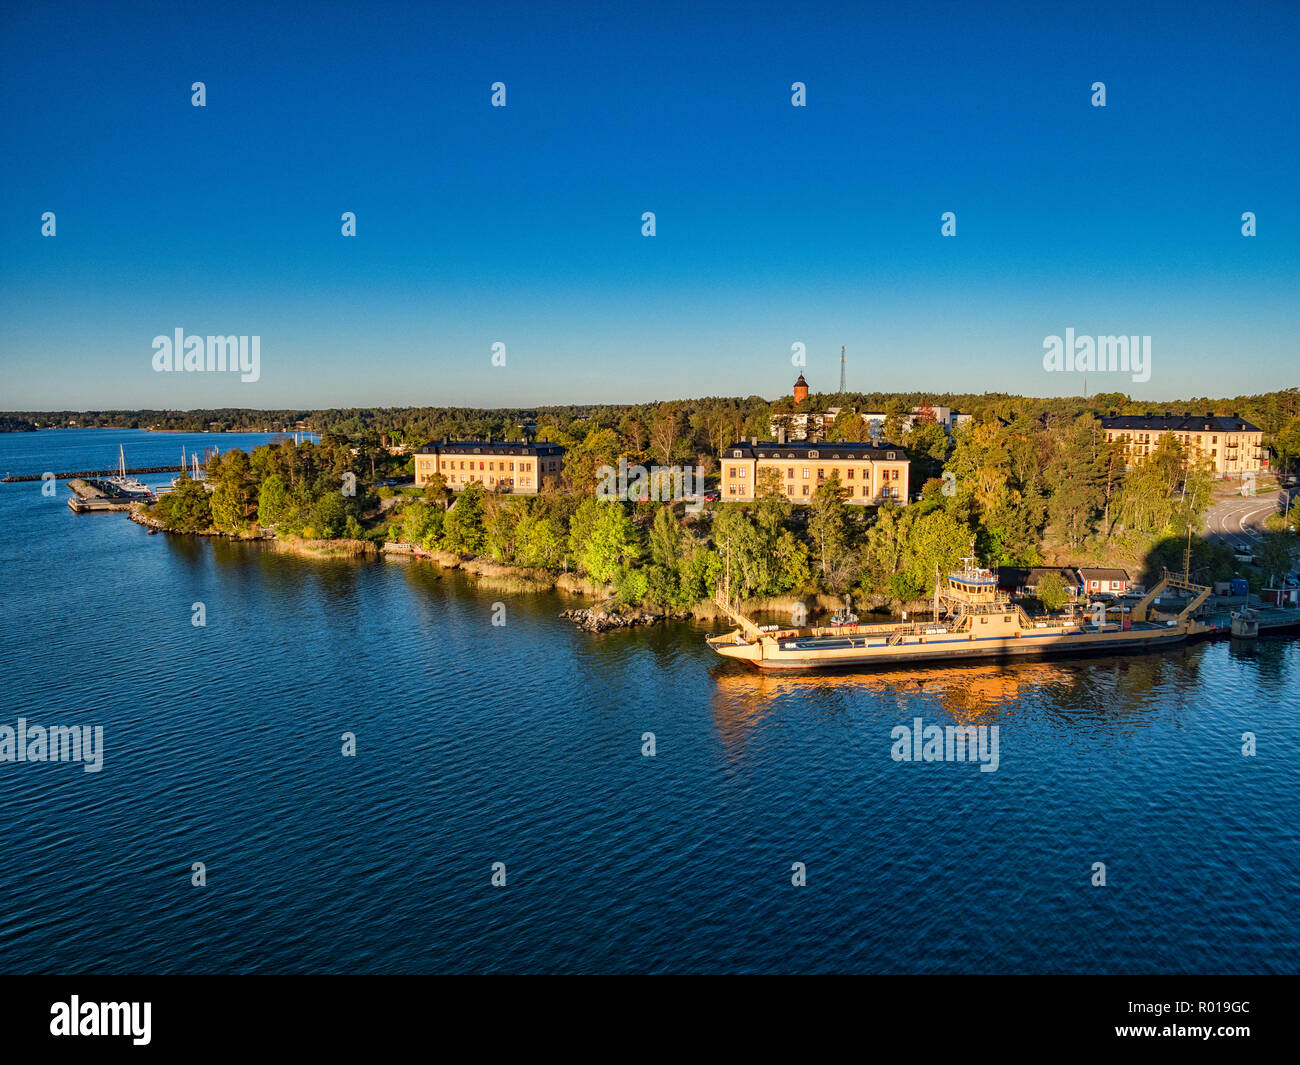 18 de septiembre de 2018: Estocolmo, Suecia - Vista de algunas de las islas del archipiélago de Estocolmo en un crucero como velas en el puerto, al amanecer. Foto de stock